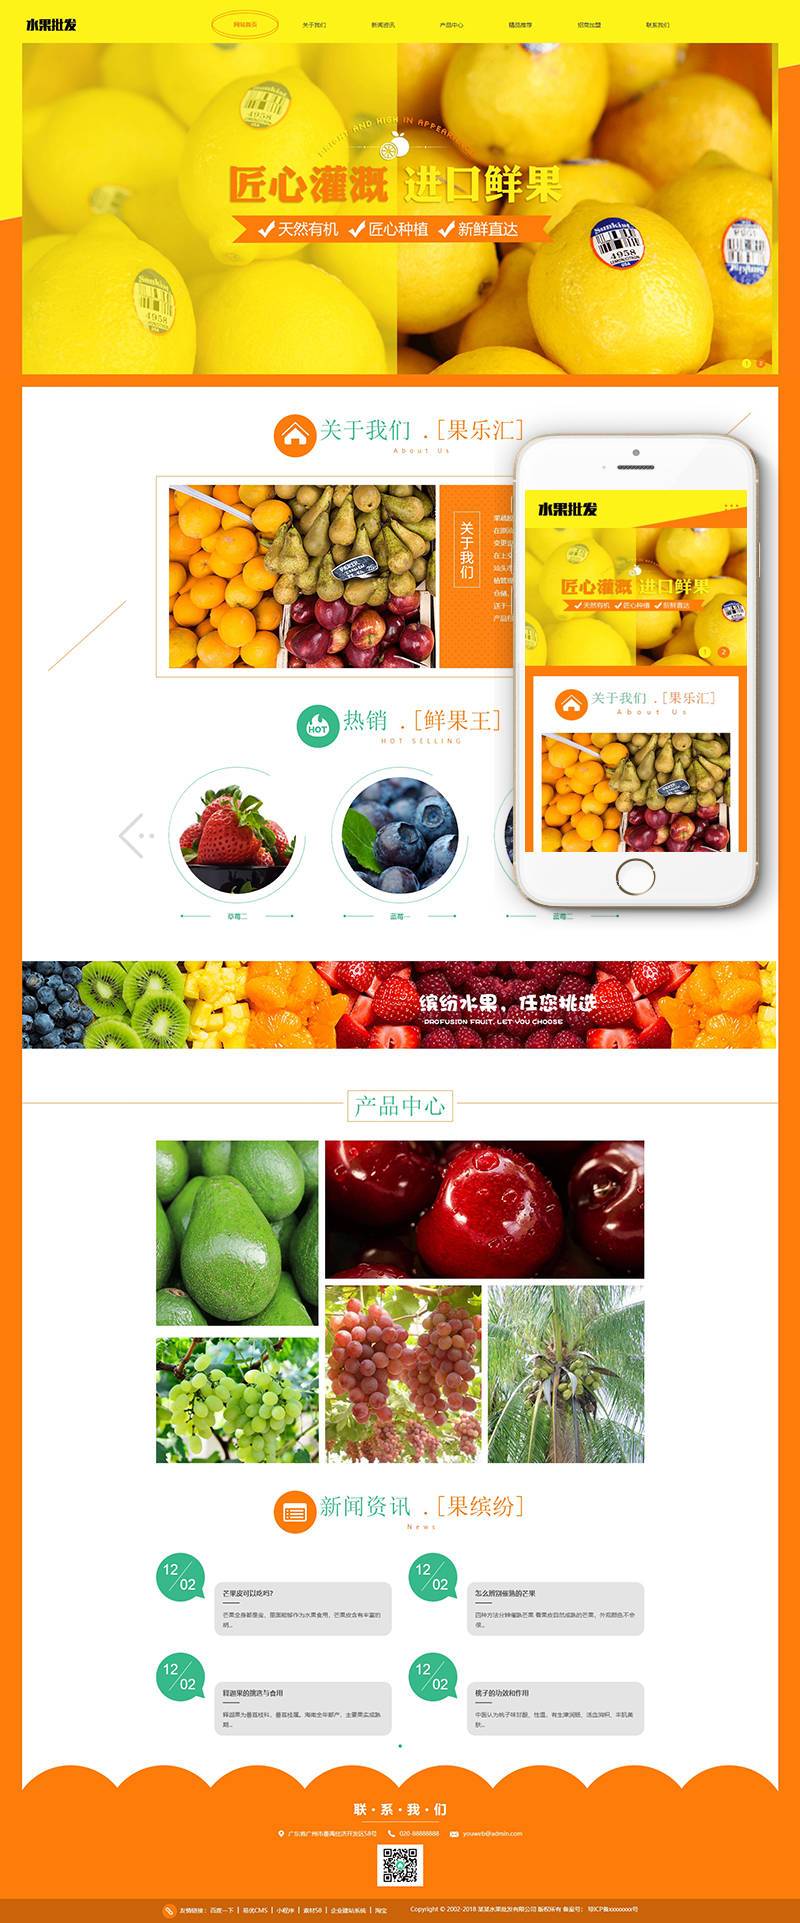 蔬菜水果批发网站WordPress模板含手机站演示图